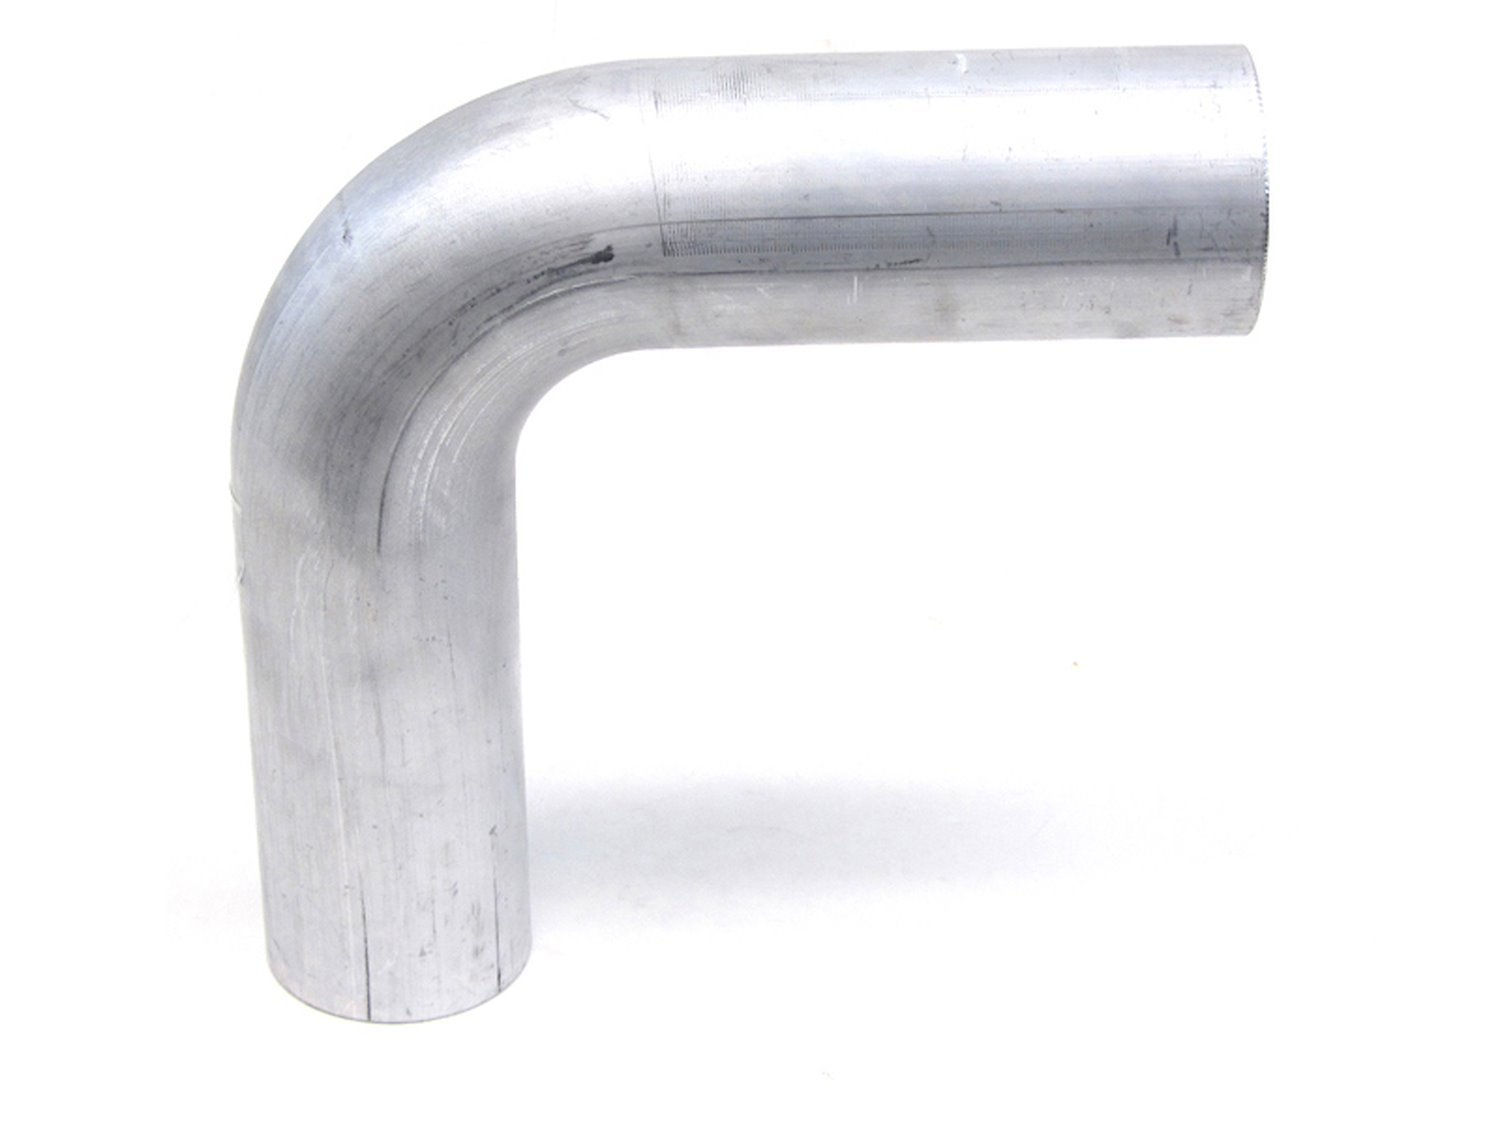 AT90-162-CLR-2 Aluminum Elbow Tube, 6061 Aluminum, 90-Degree Bend Elbow Tubing, 1-5/8 in. OD, Tight Radius, 2 in. CLR